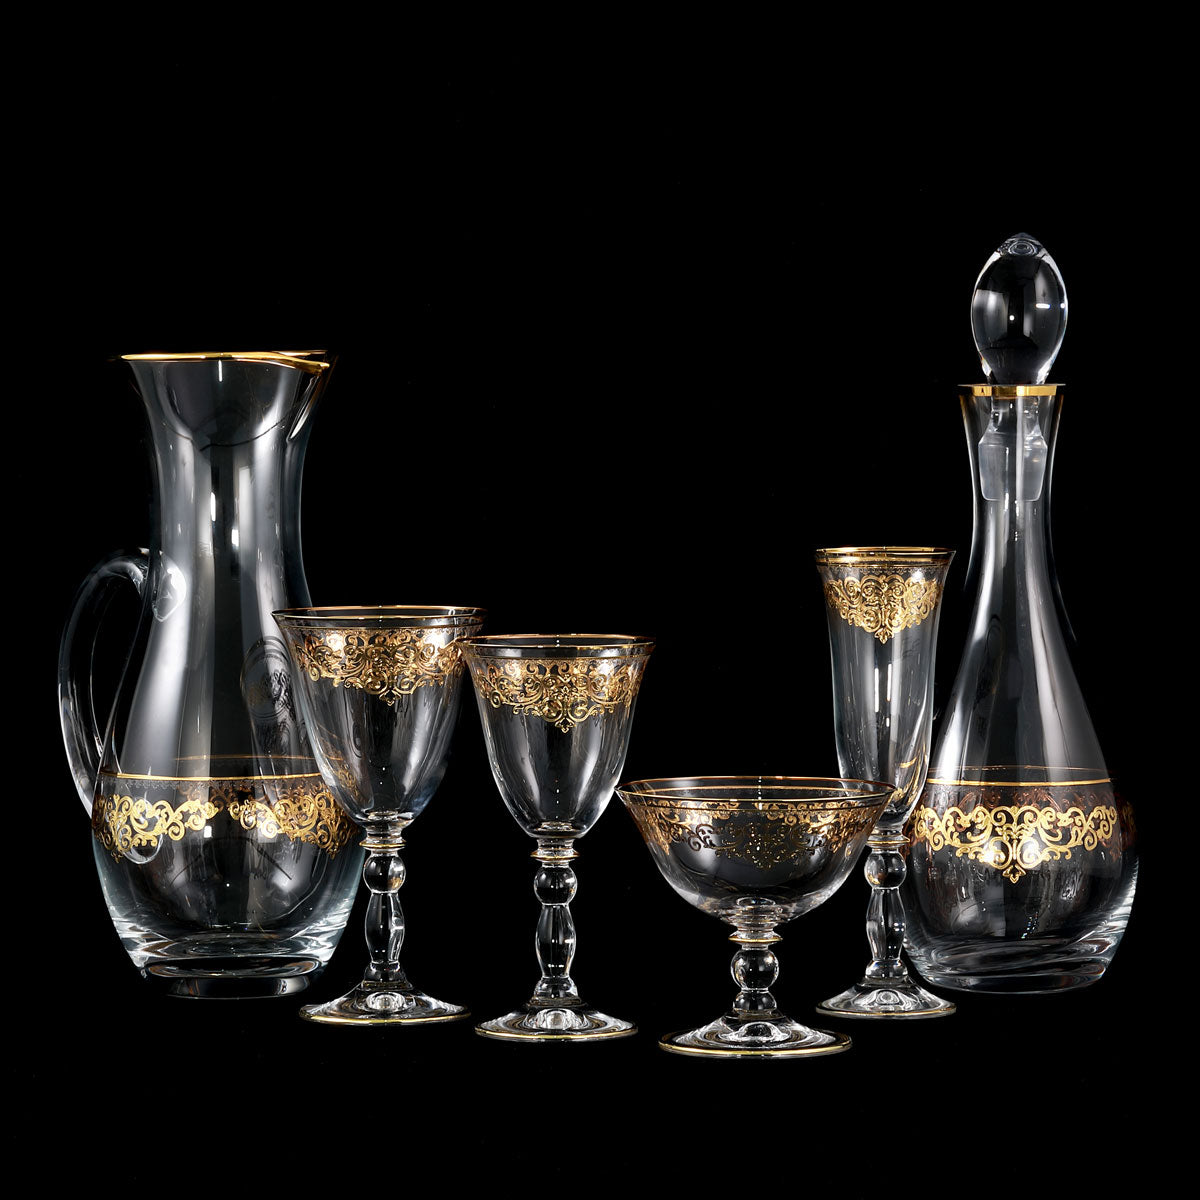 Servizio bicchieri in cristallo con decoro stile barocco in oro con incisione - Praga